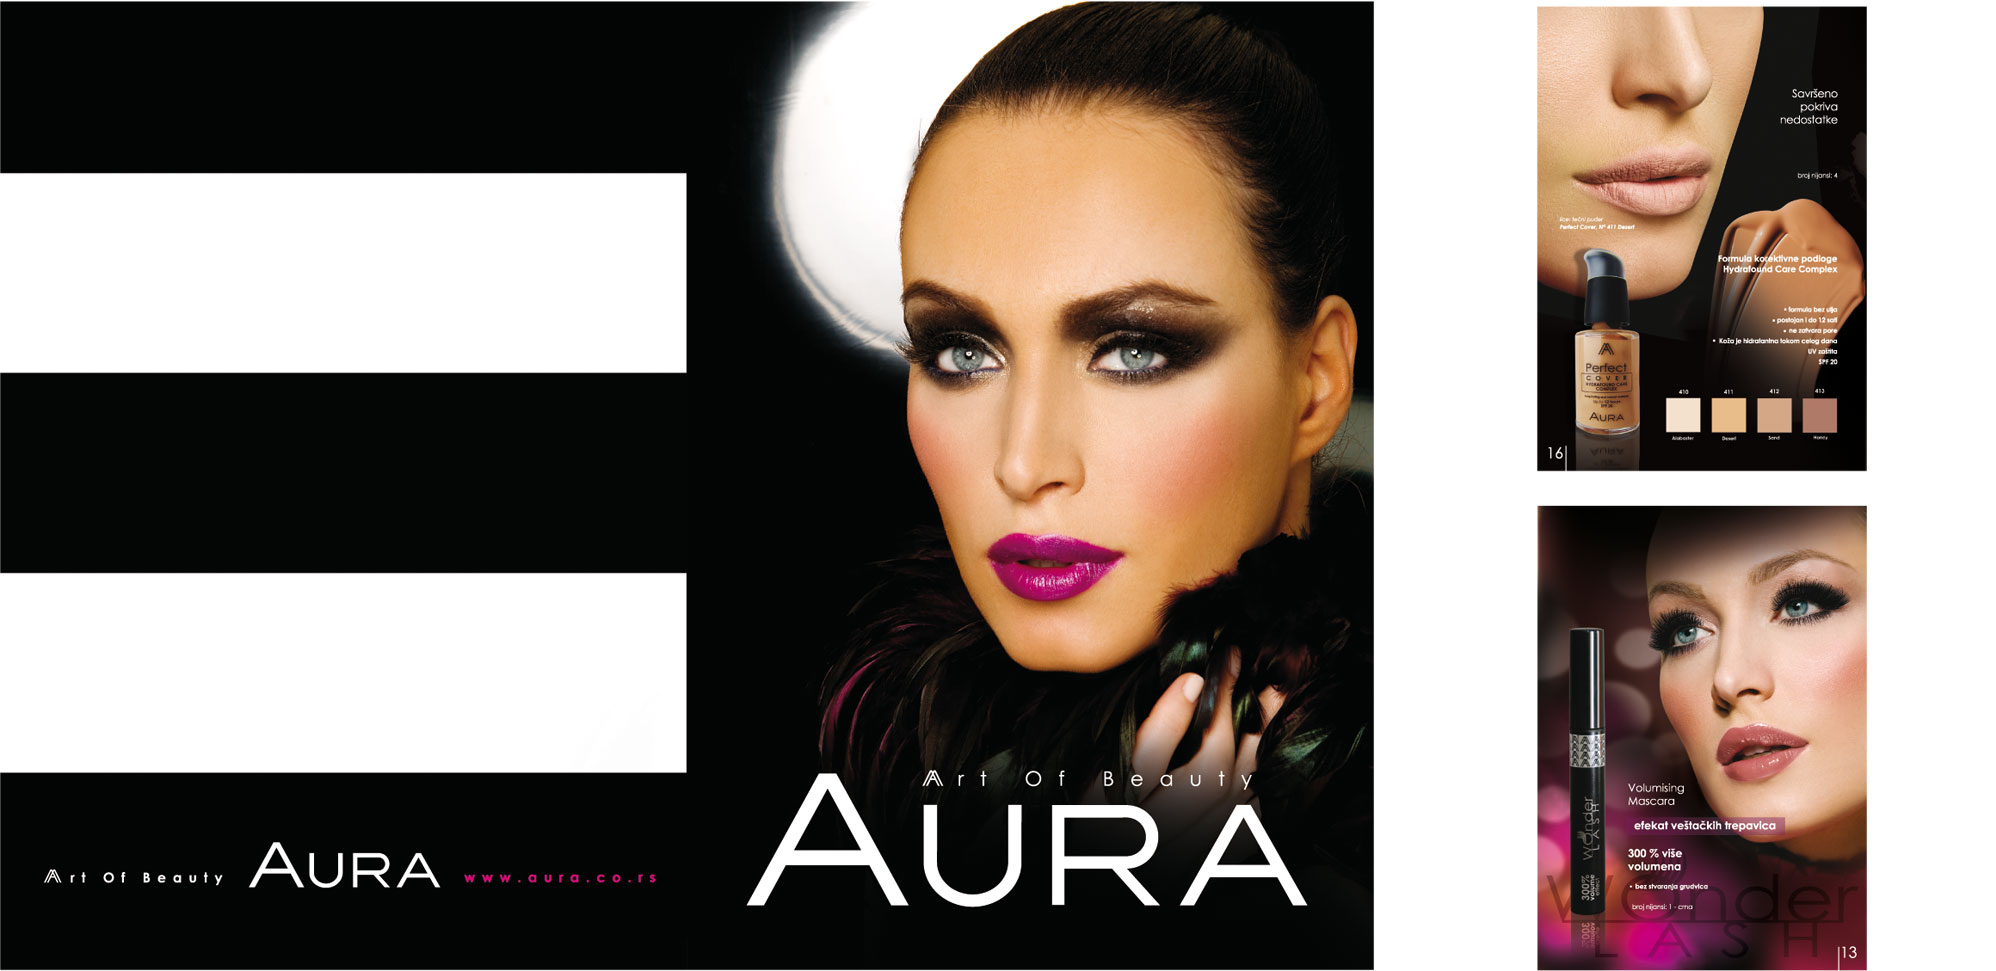 aura katalog 4